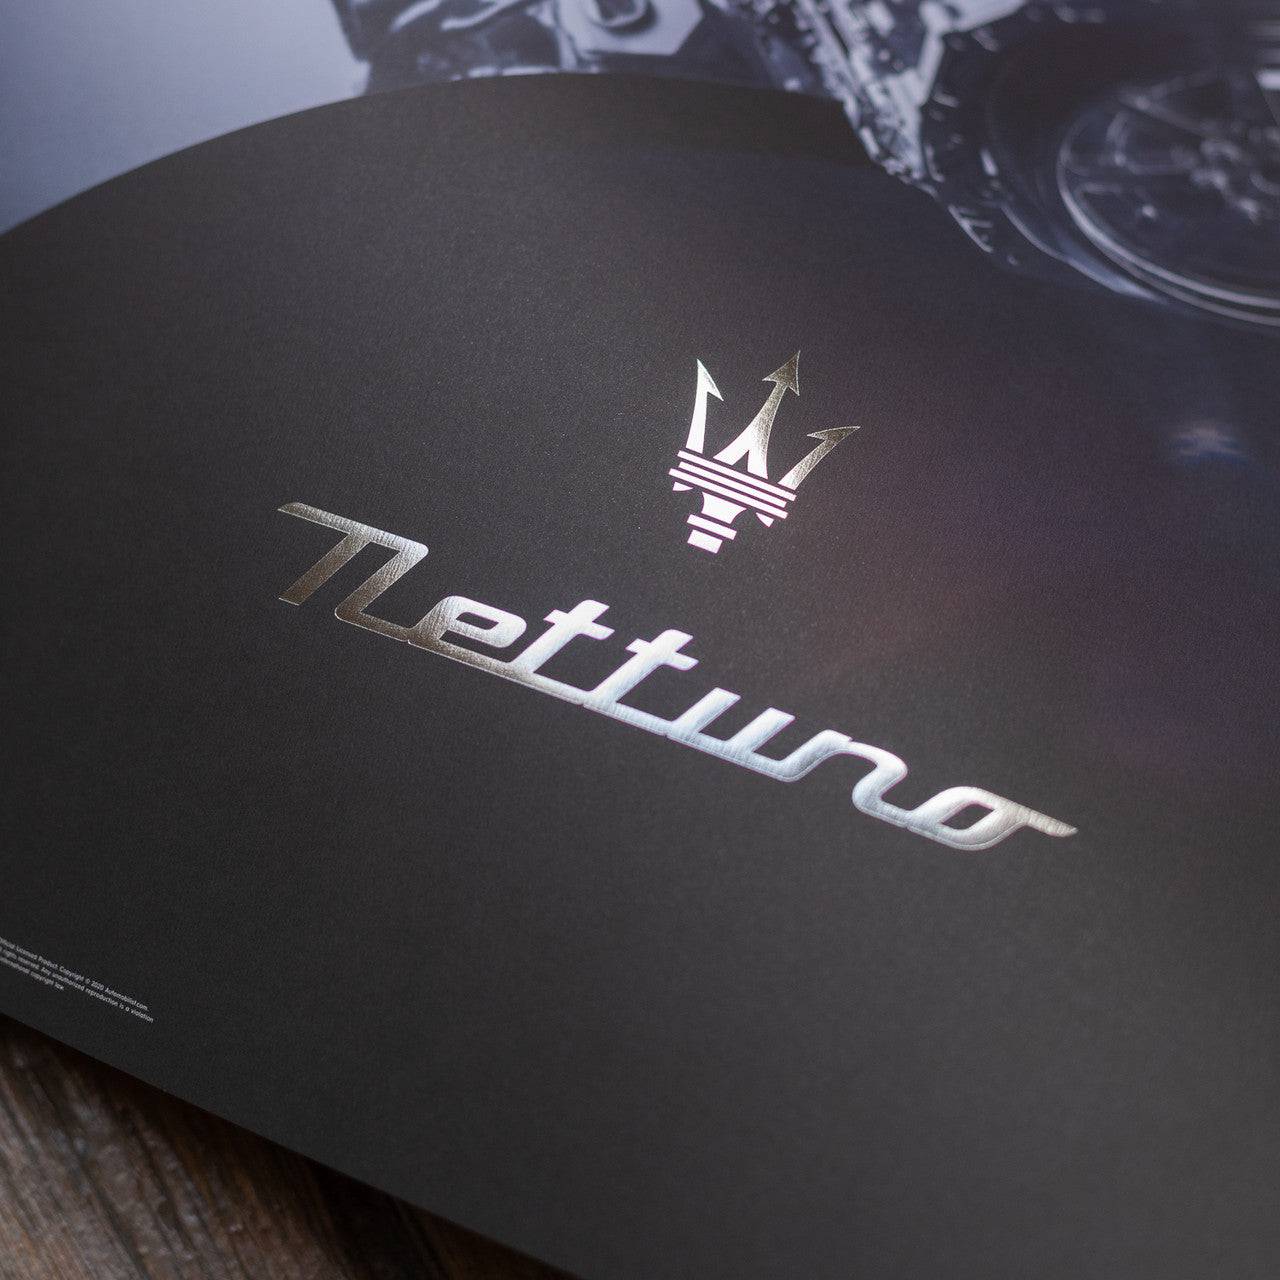 Maserati Nettuno - Engine - The Ring | Collector’s Edition